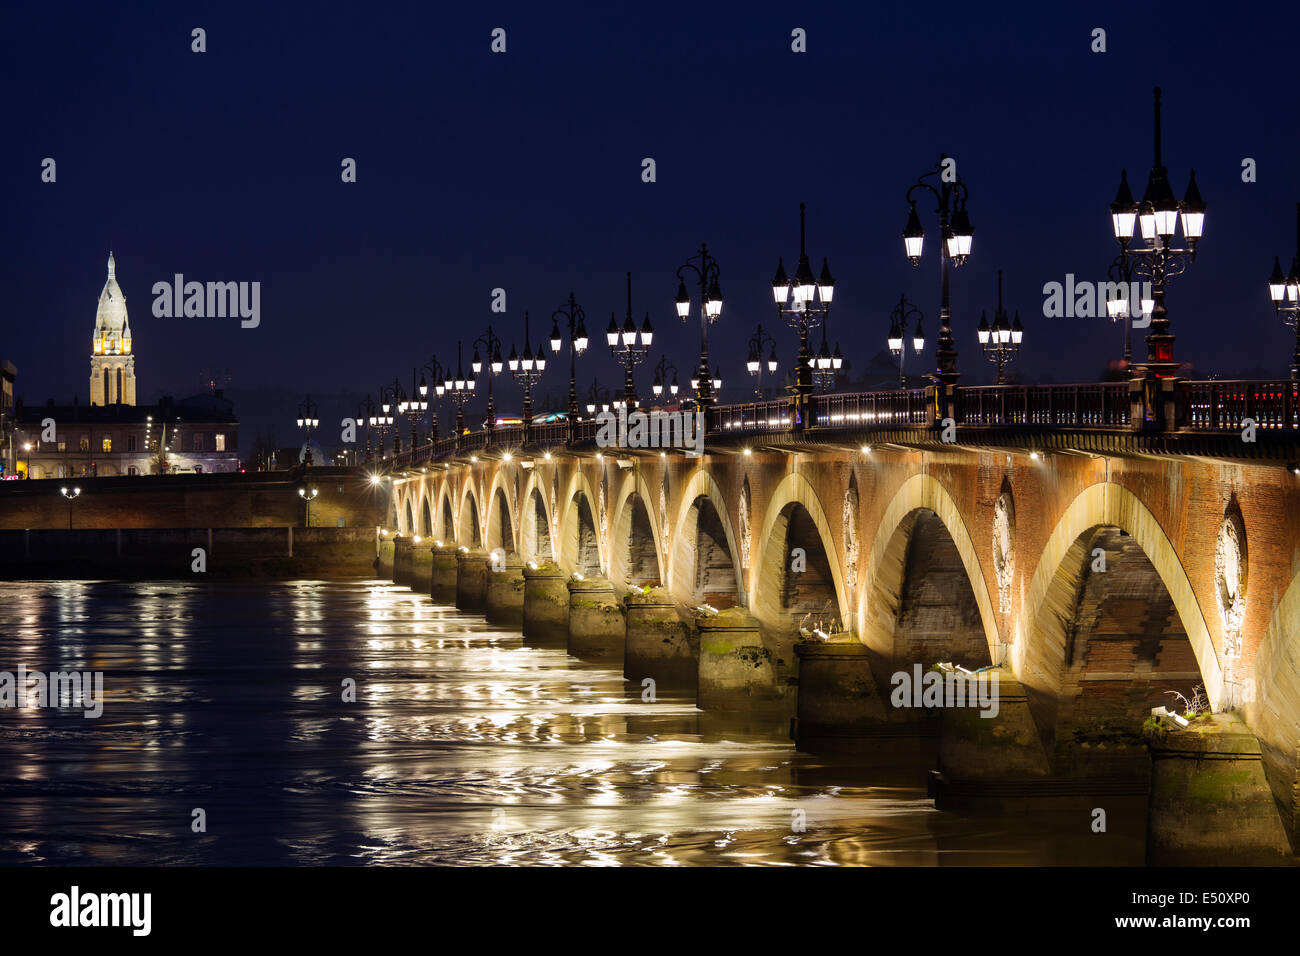 Pont de Pierre Garonne river Bordeaux Aquitaine France Stock Photo